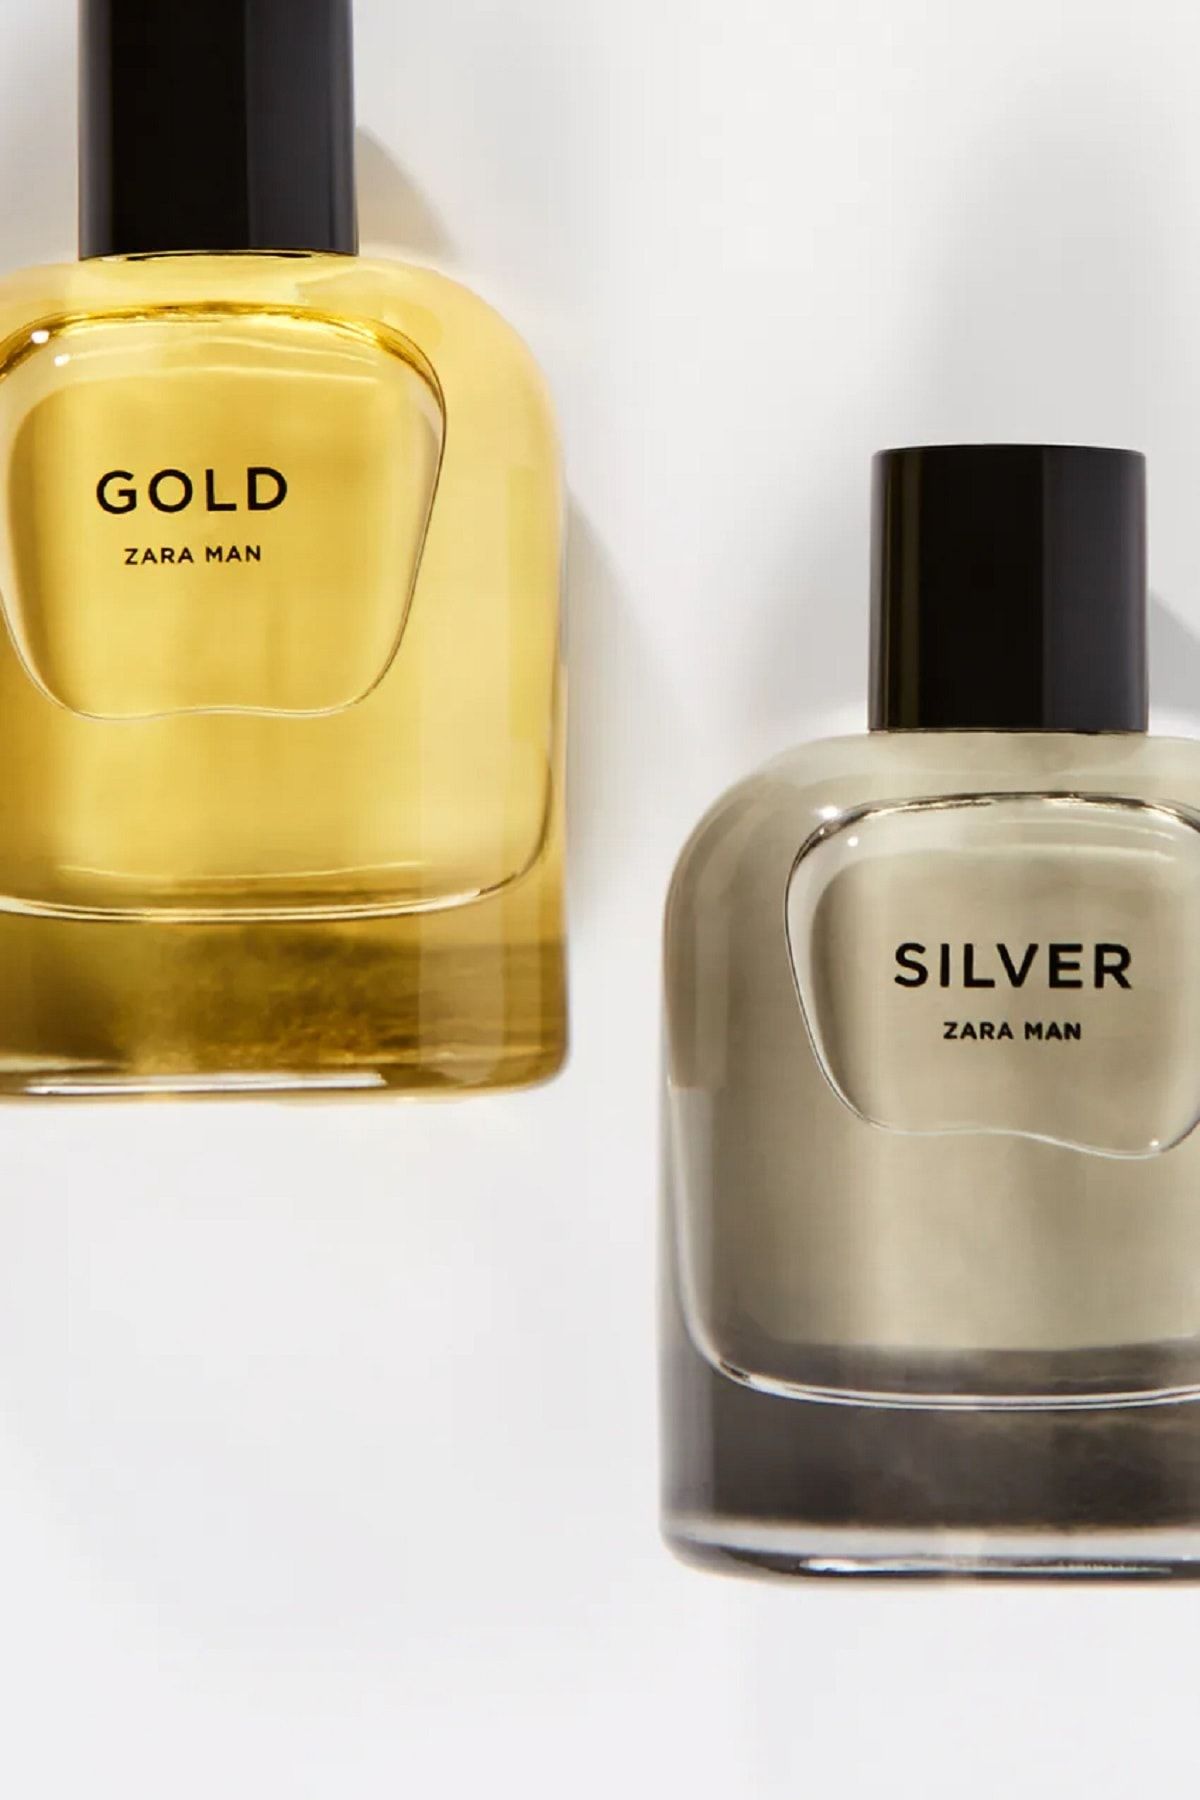 Zara Man Gold Edt 80 ml + Silver